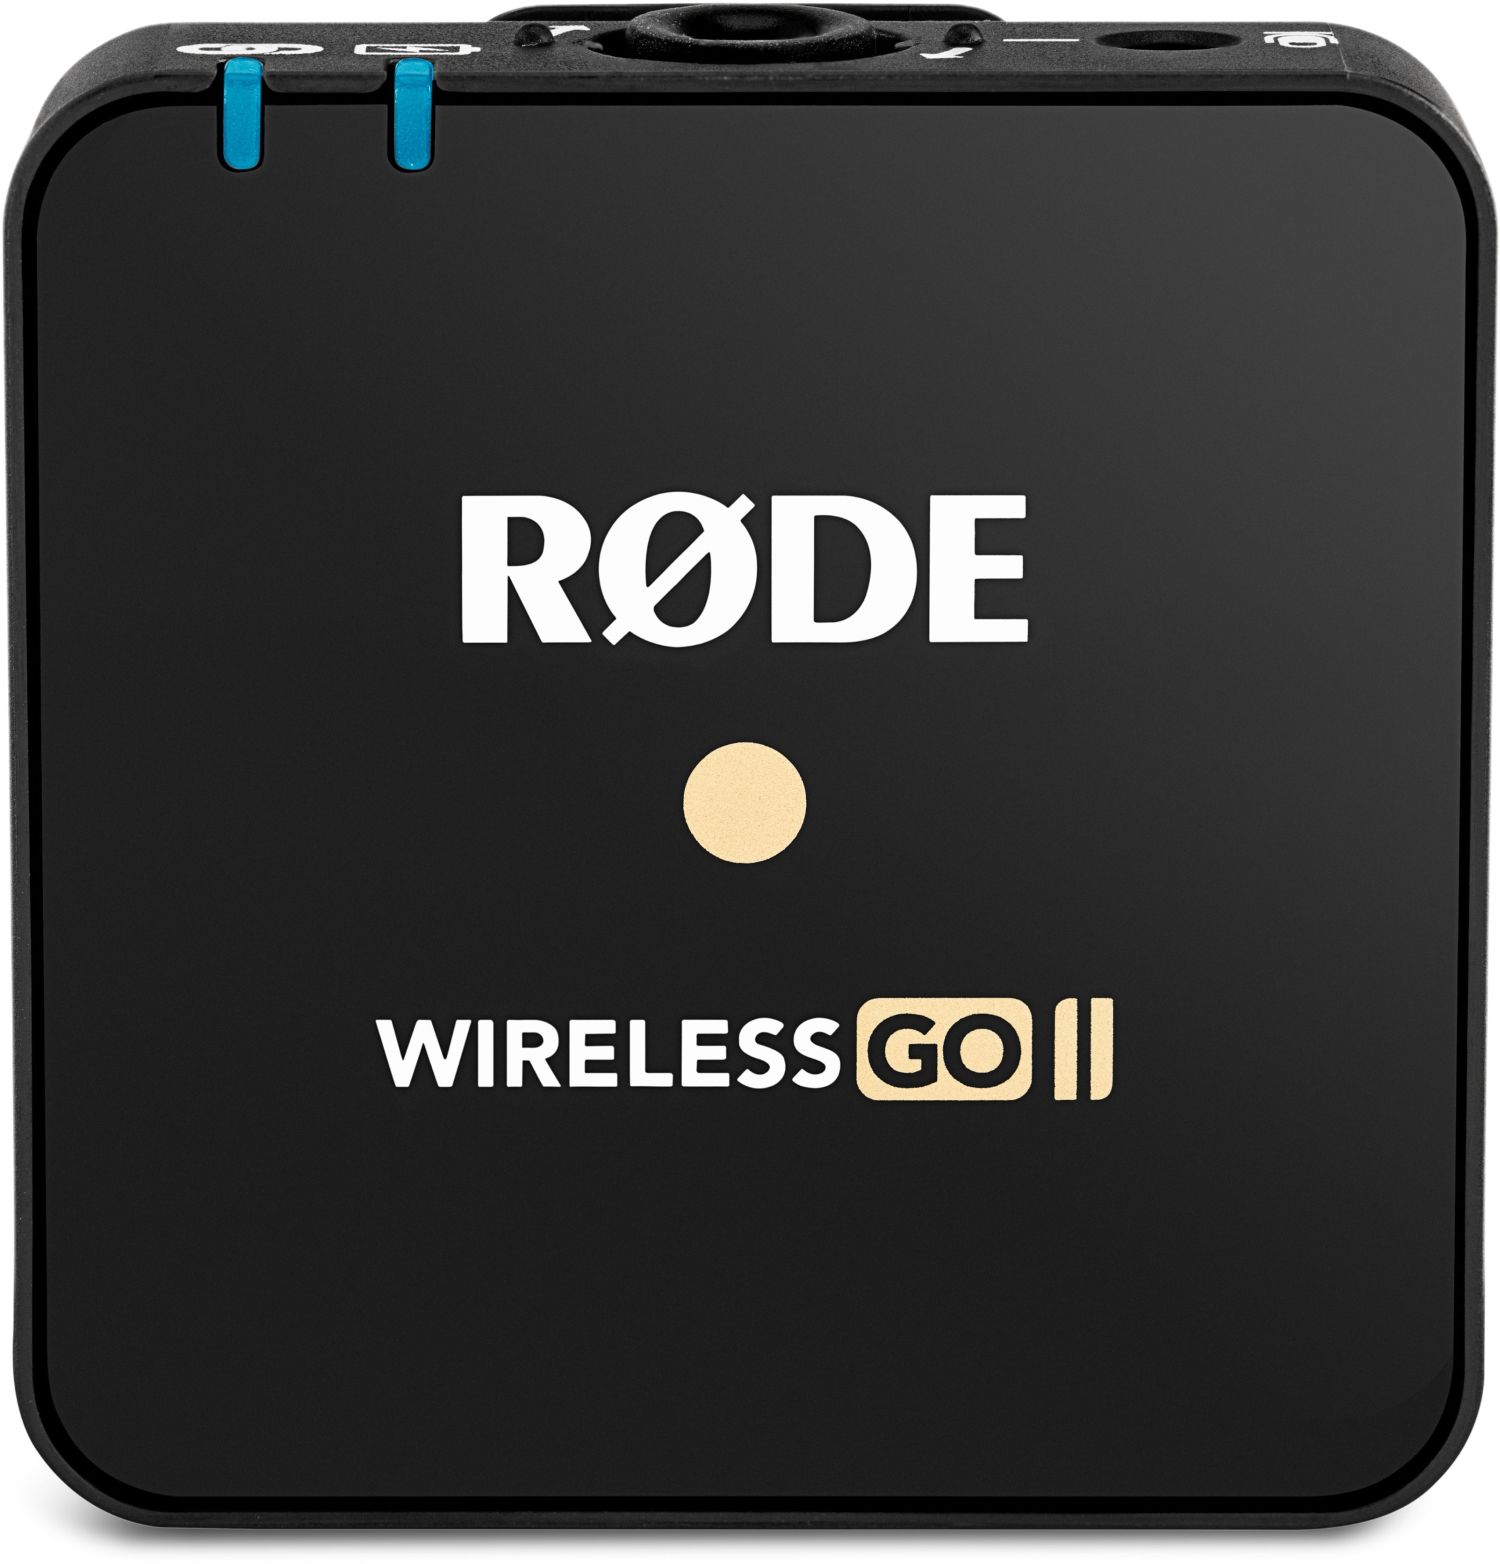 Rode Wireless GO II TX - Foto Erhardt